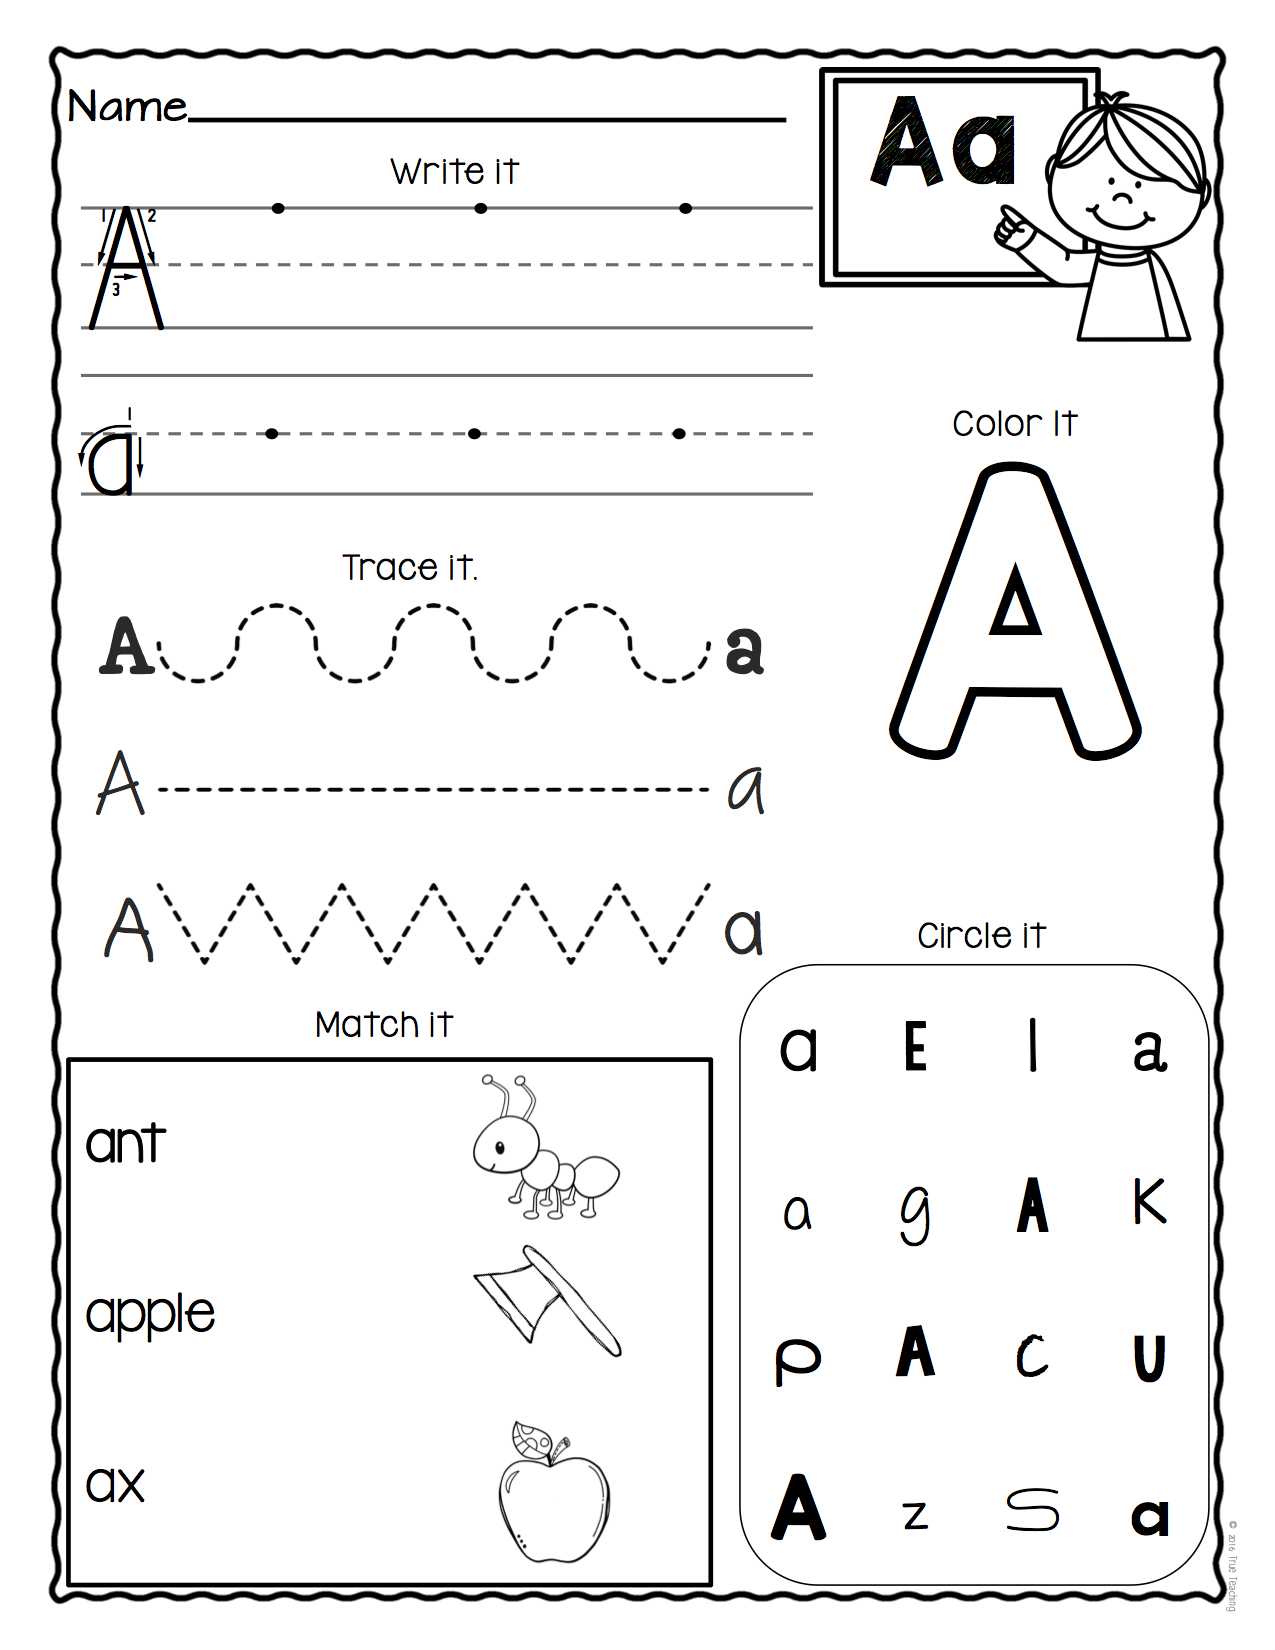 Alphabet Recognition Worksheets for Kindergarten Also Letter Recognition Worksheets for Esl